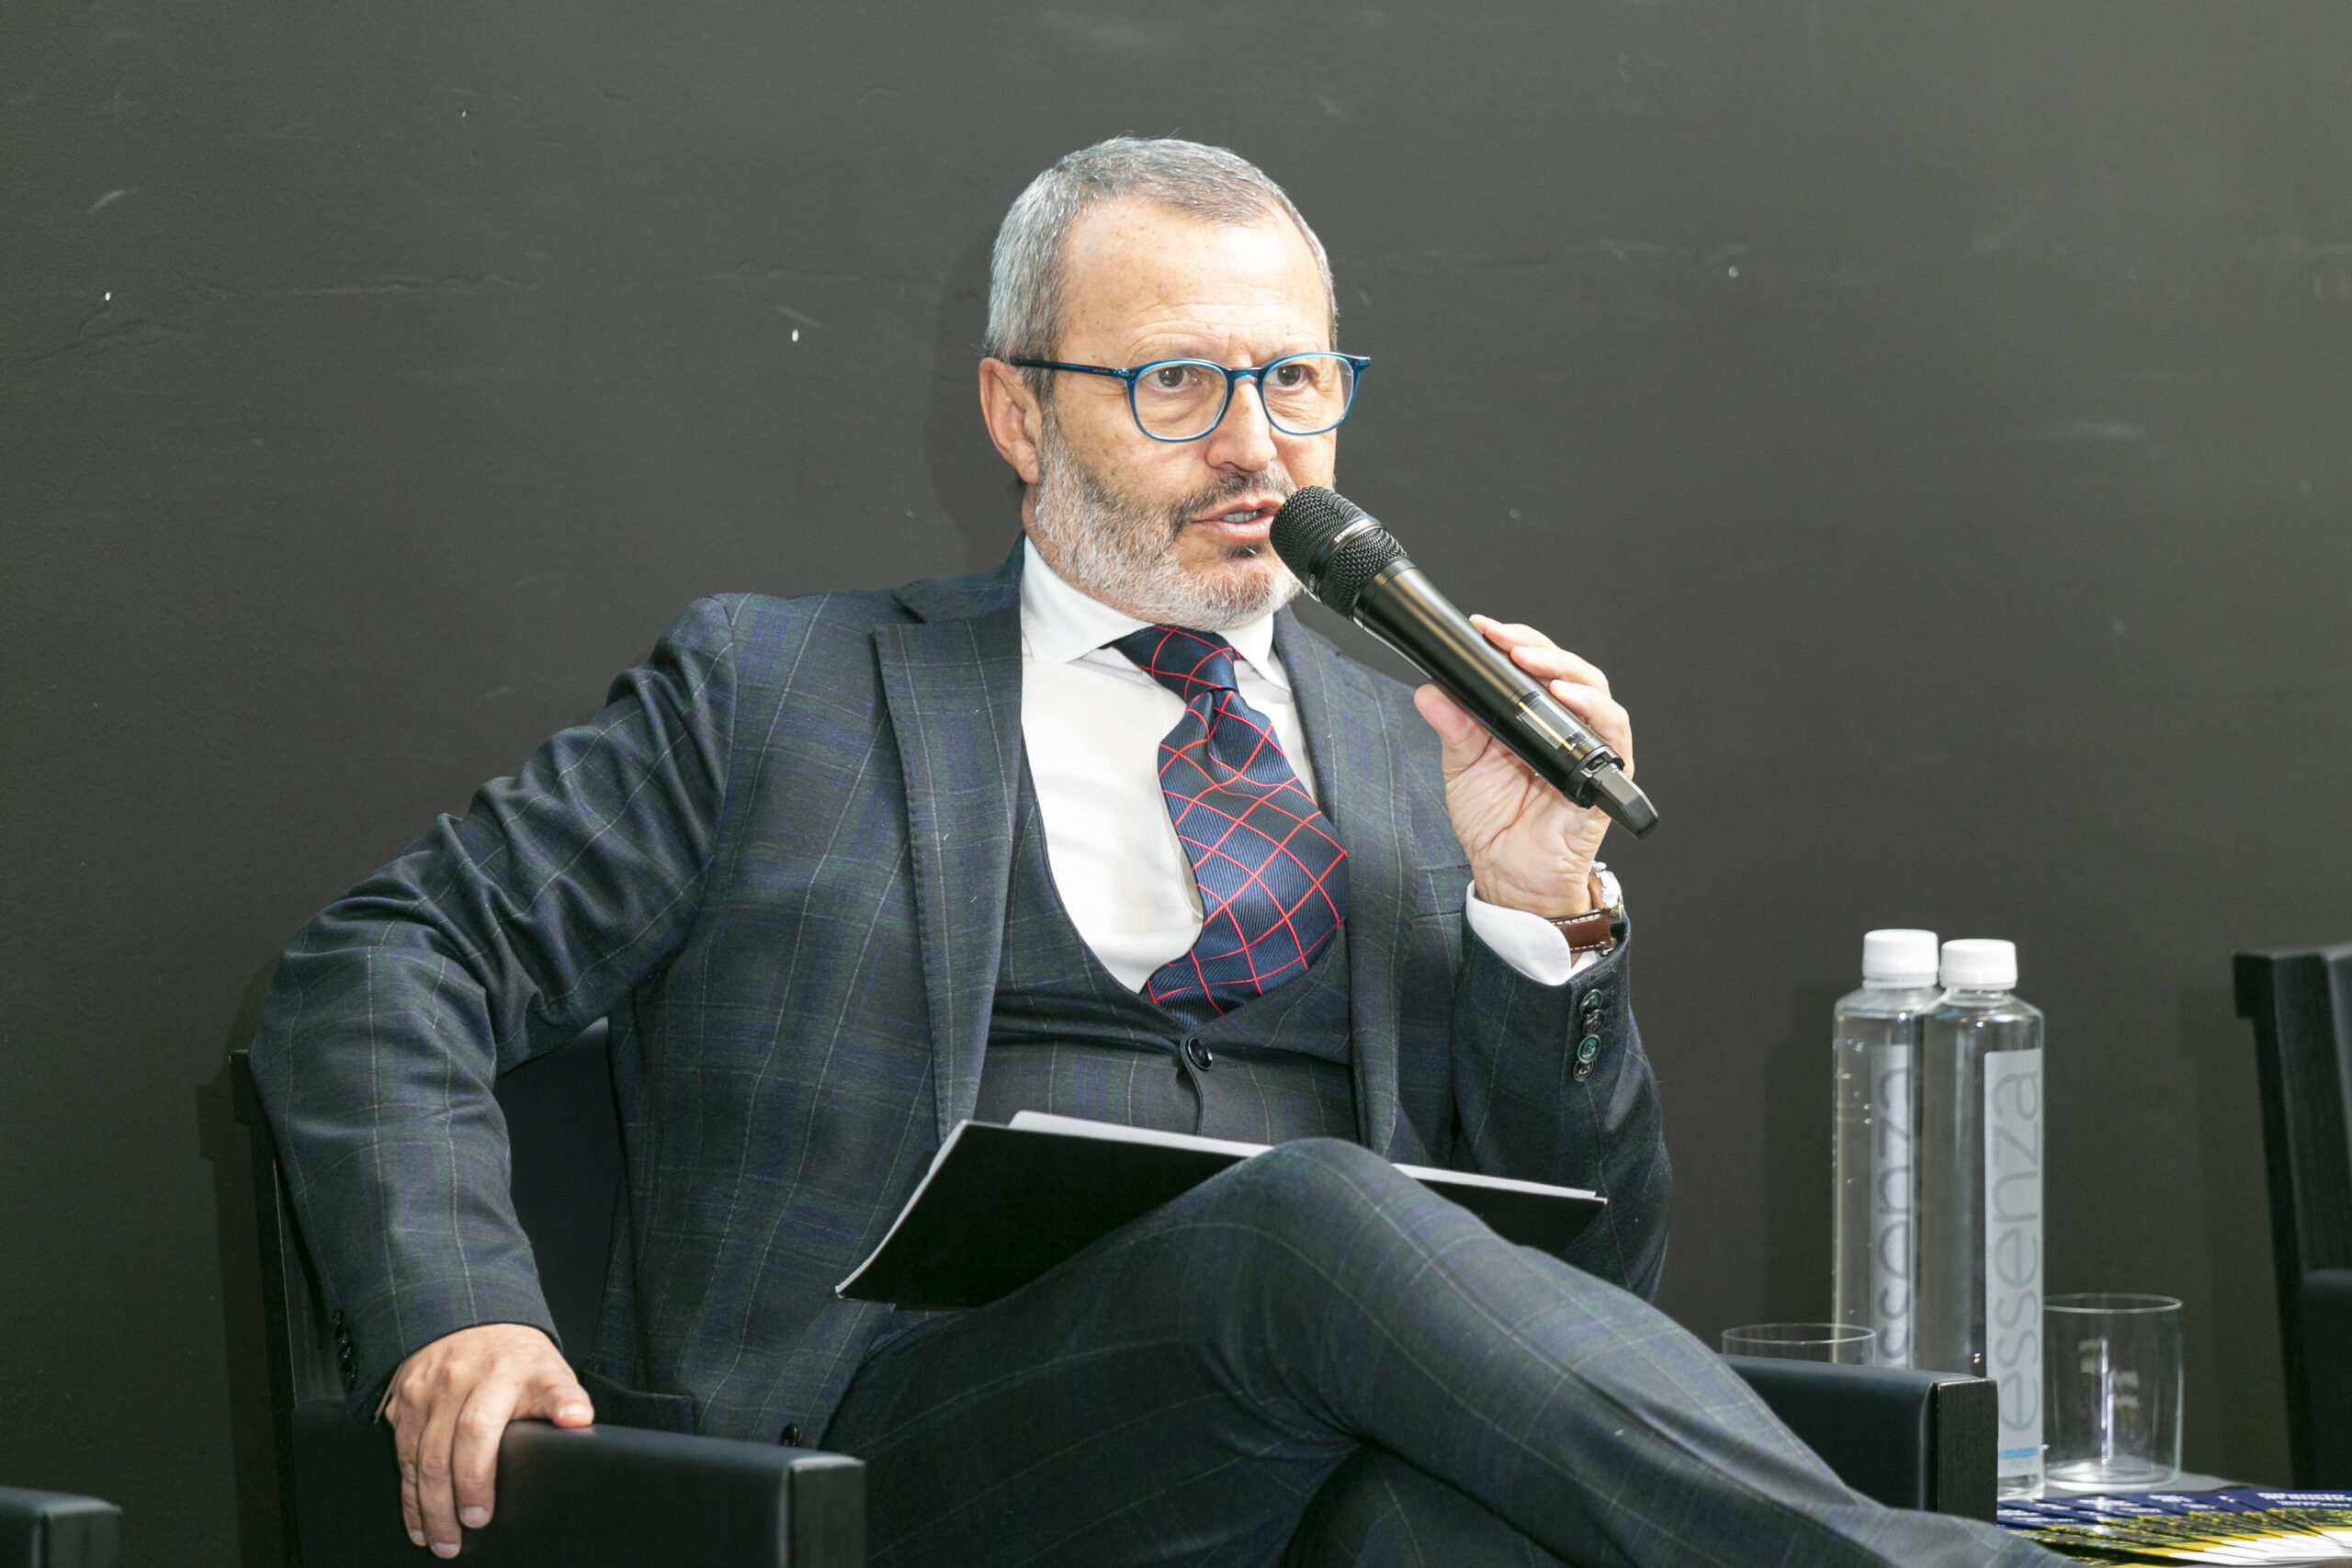  Sandro Sartor, Presidente e Amministratore Delegato di Ruffino e vice presidente di Unione Italiana Vini